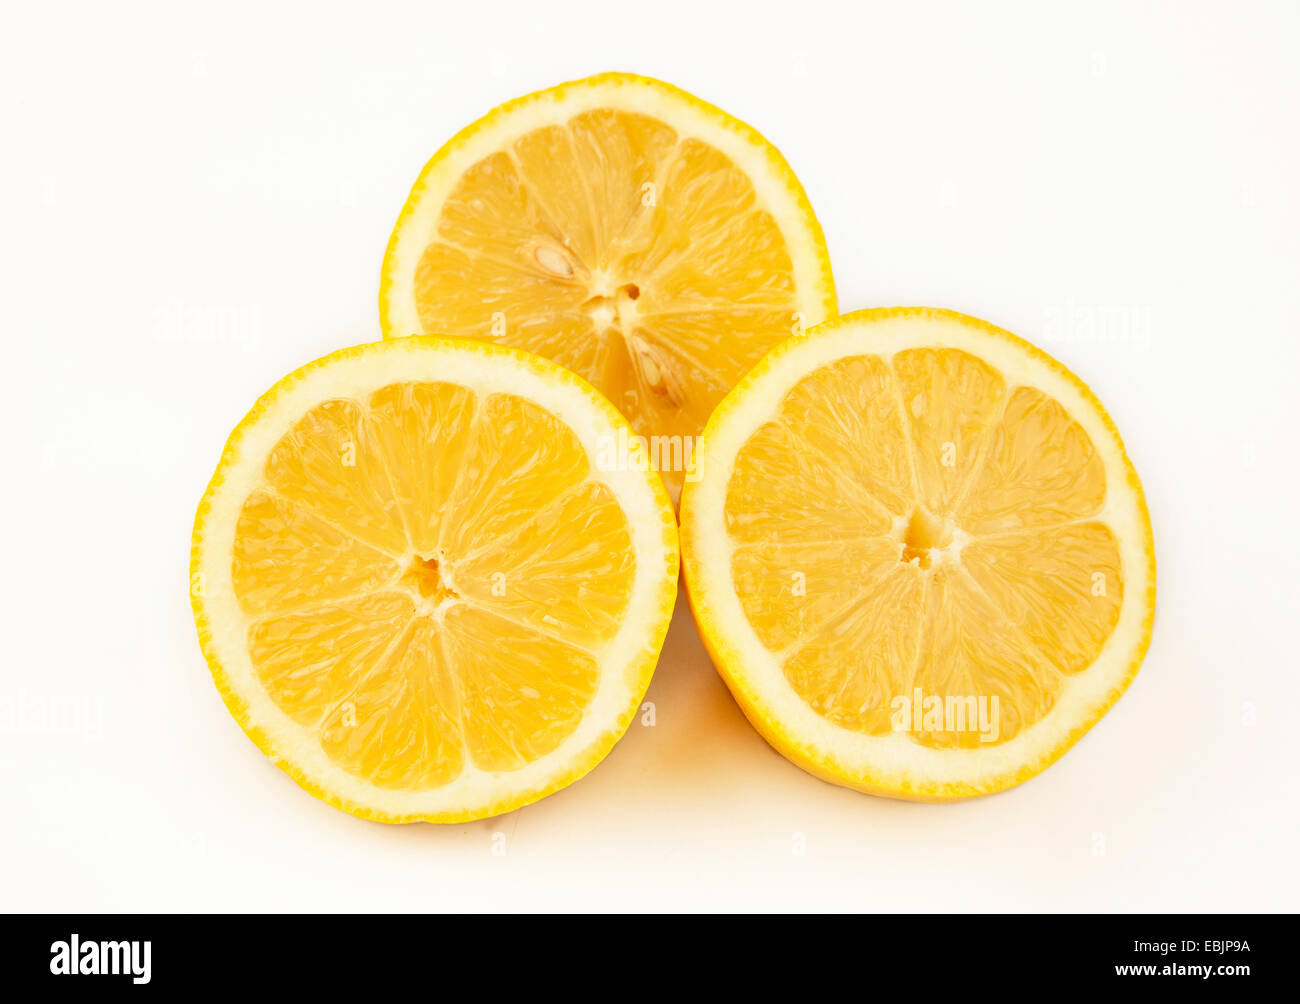 oranges sliced Stock Photo